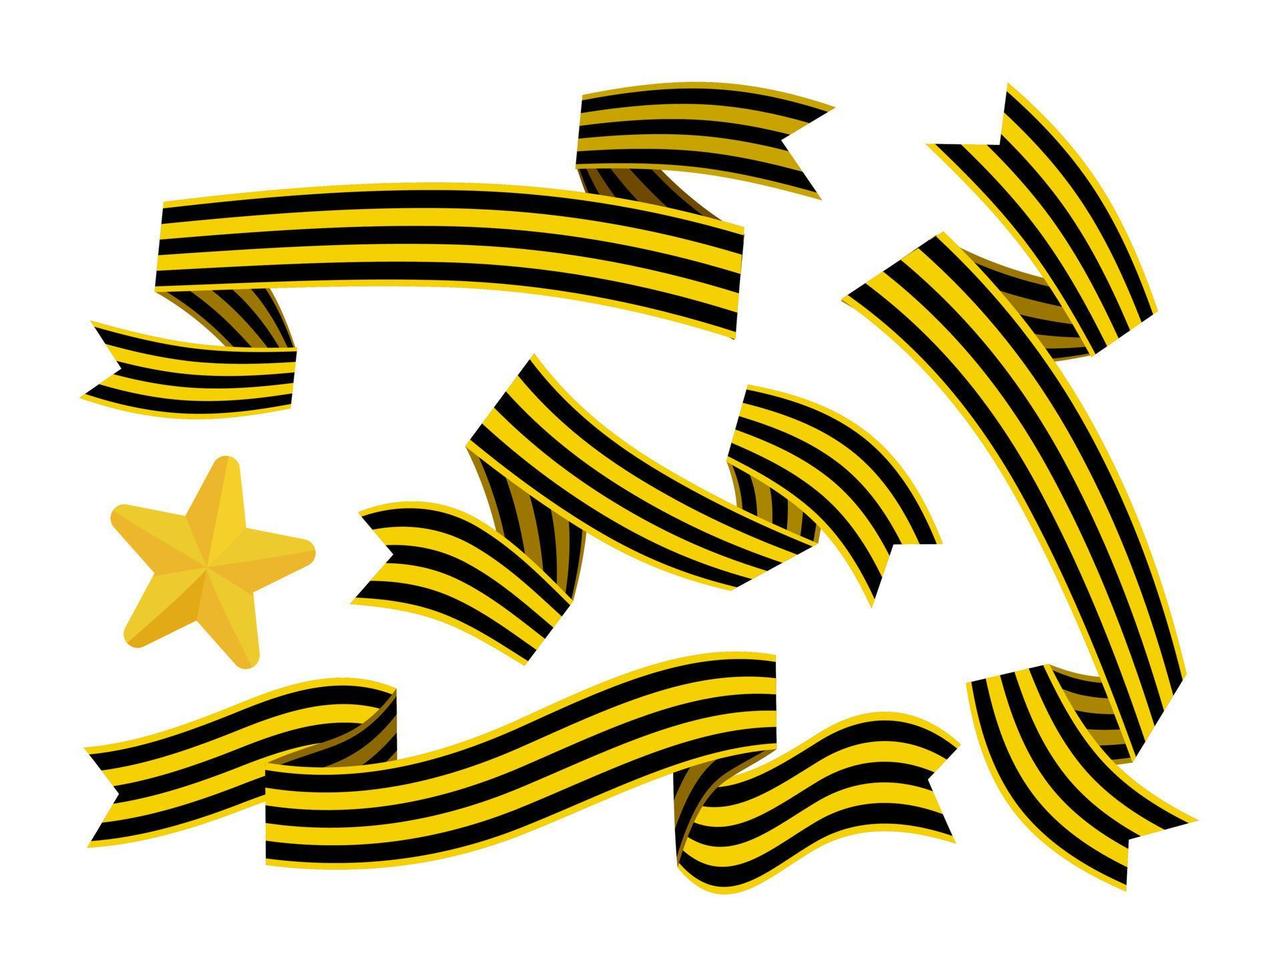 siegestag 9. mai symbole der feiertage lorbeerzweige sterne st. George-Band-Vektor-Illustration vektor